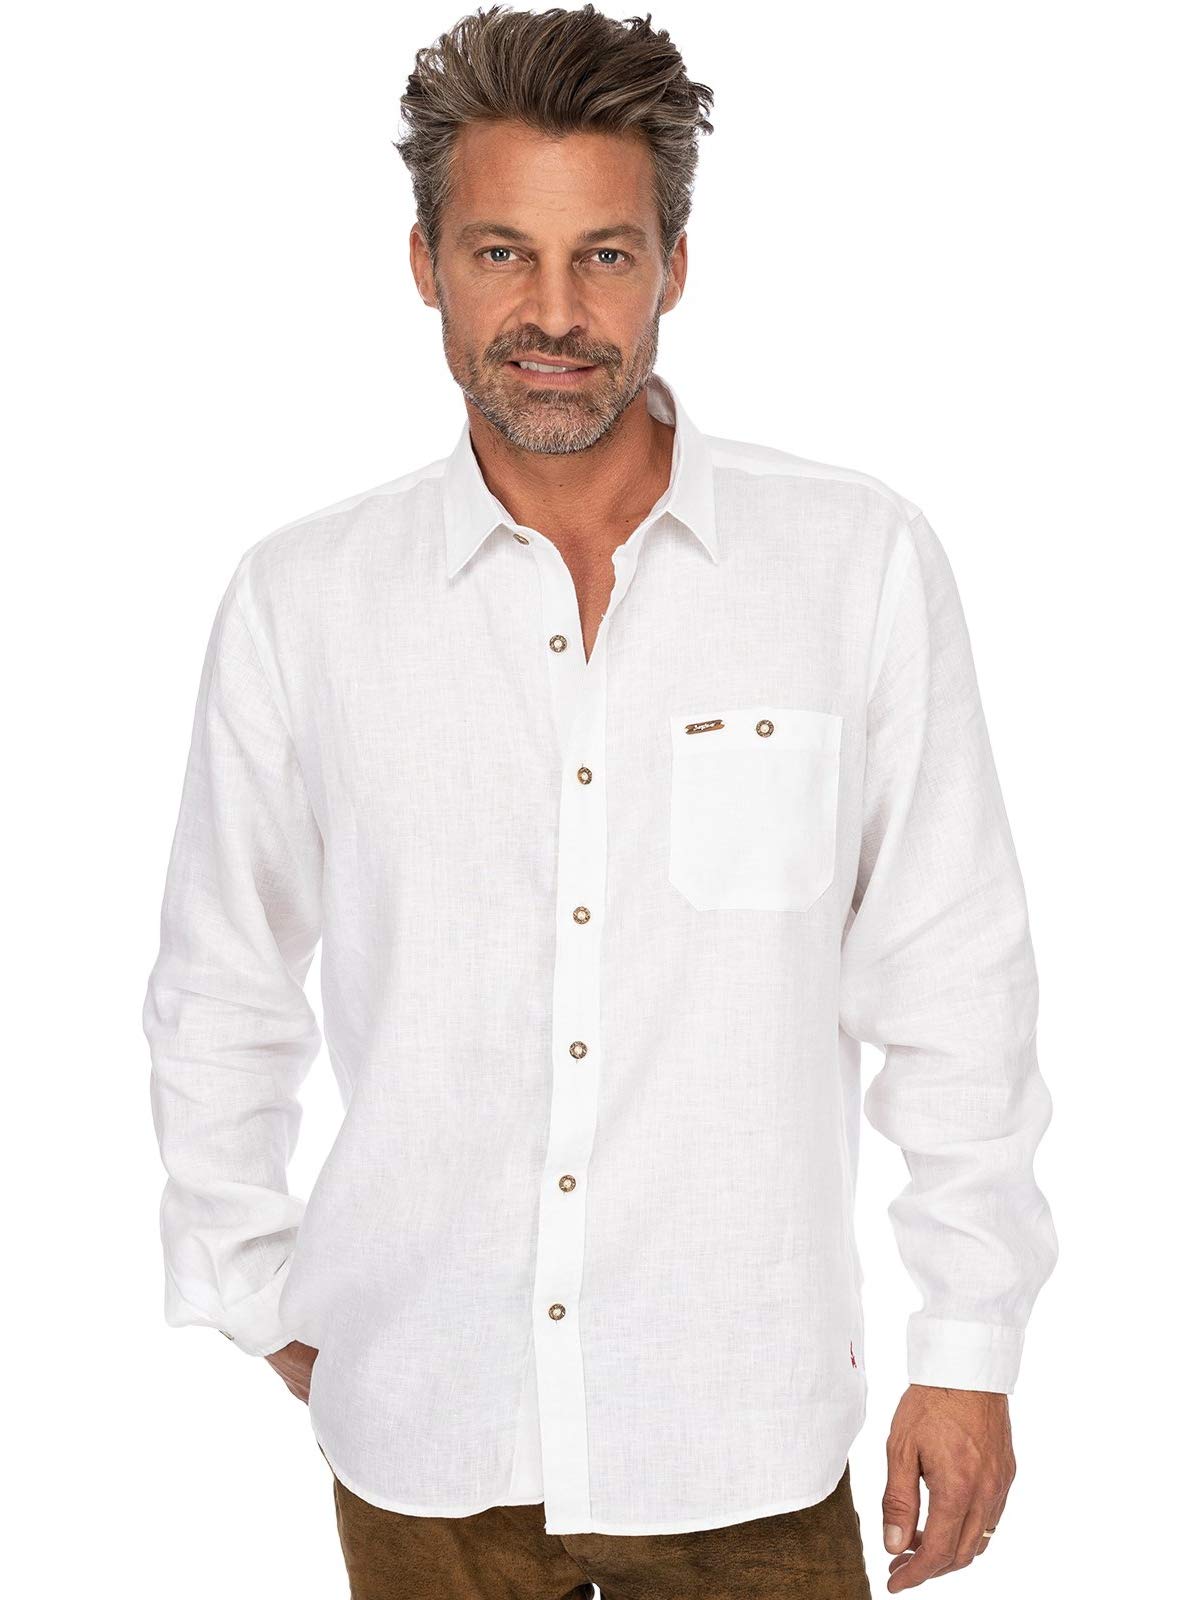 Stockerpoint Herren Hemd Vincent2 Trachtenhemd, Weiß (Weiss Weiss), X-Large (Herstellergröße: XL)